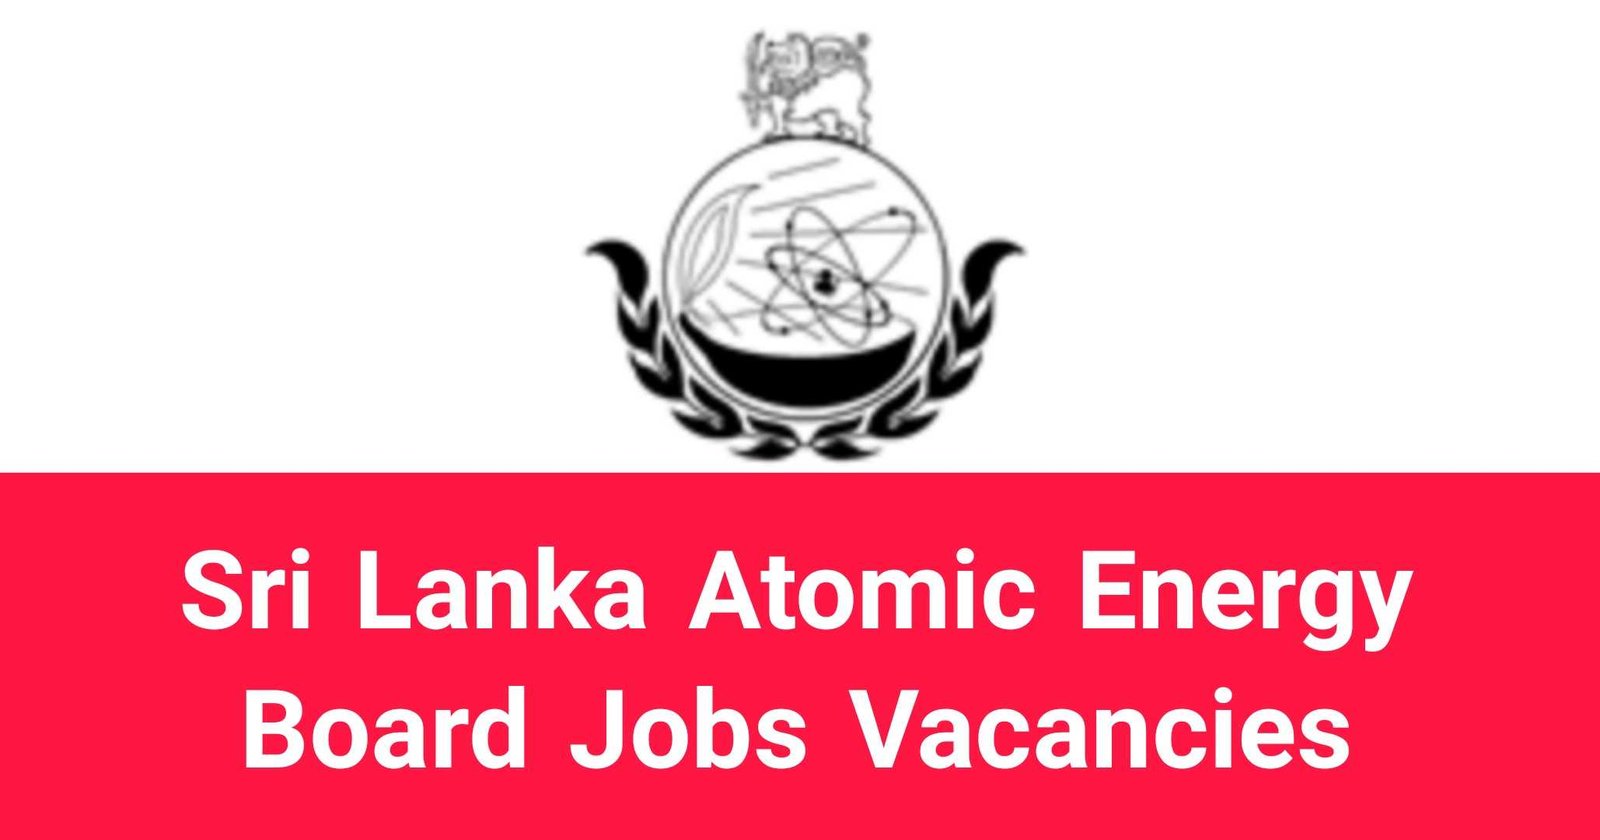 Sri Lanka Atomic Energy Board Jobs Vacancies Careers